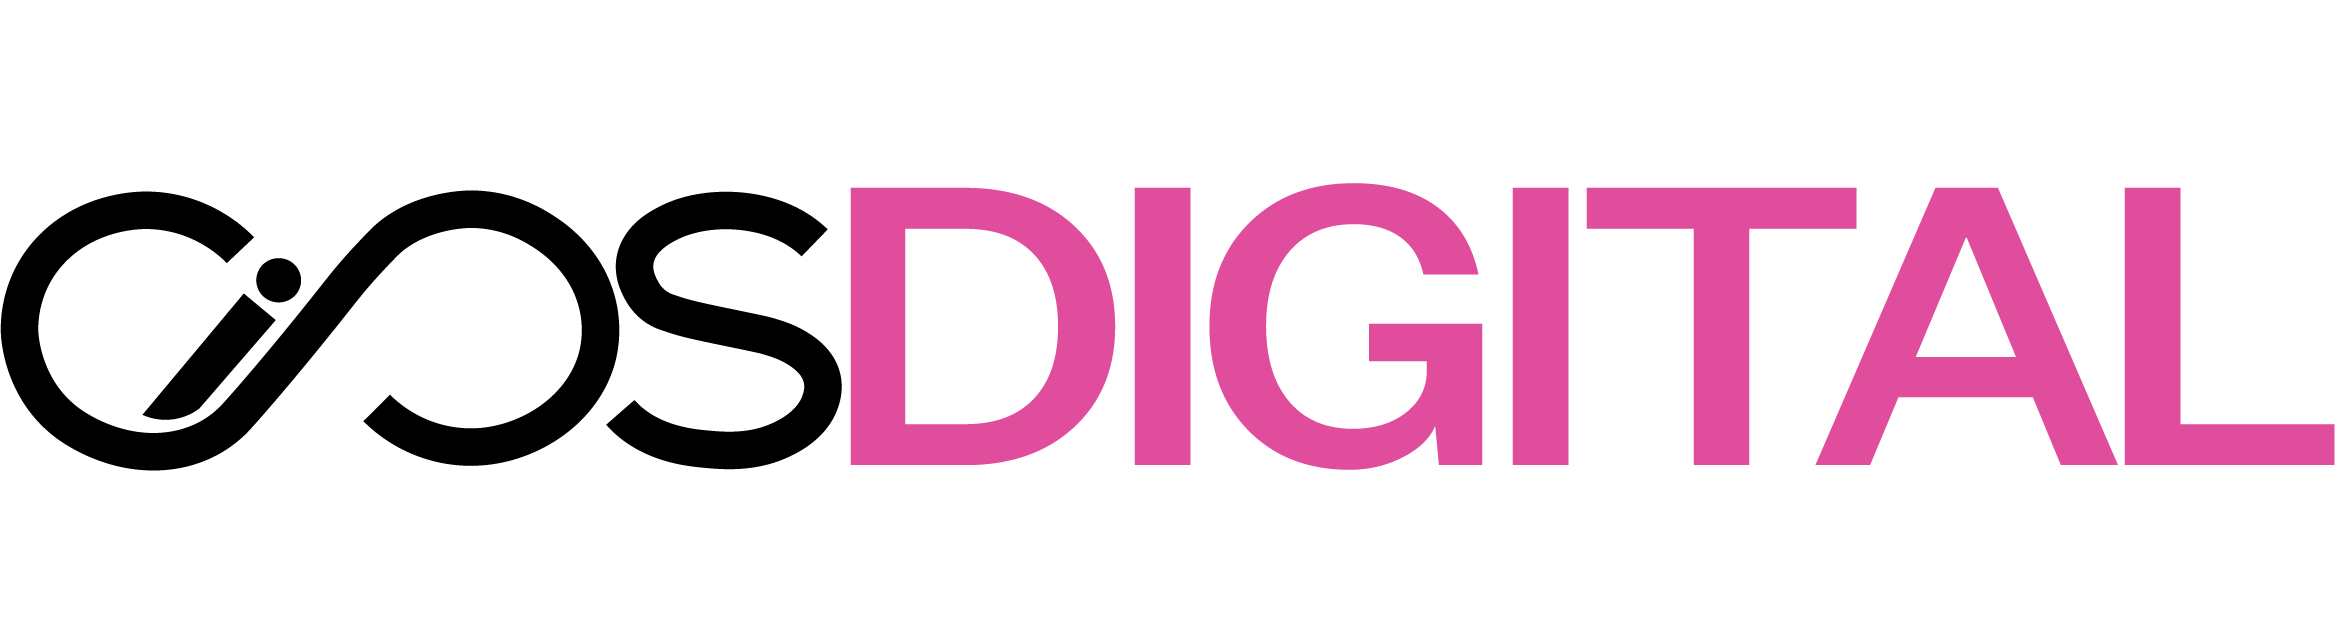 aios digital logo